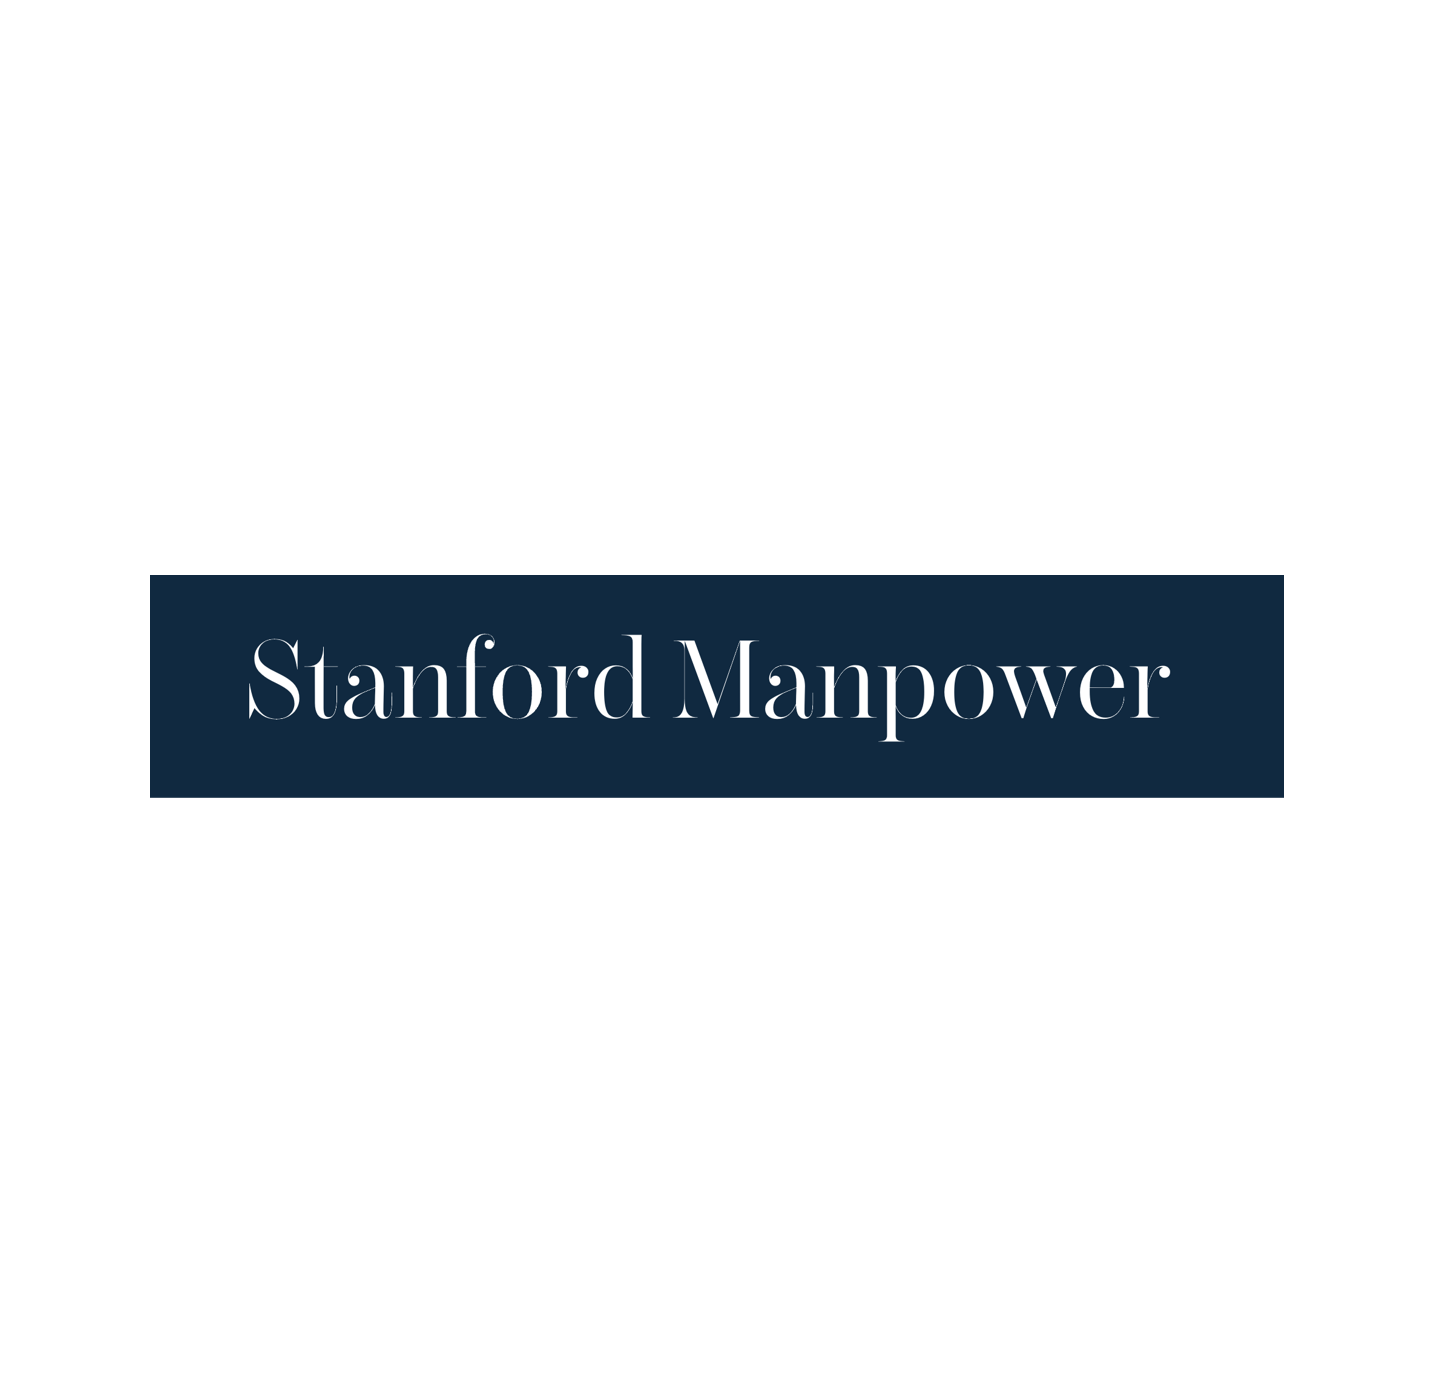 Stanford Manpower logo